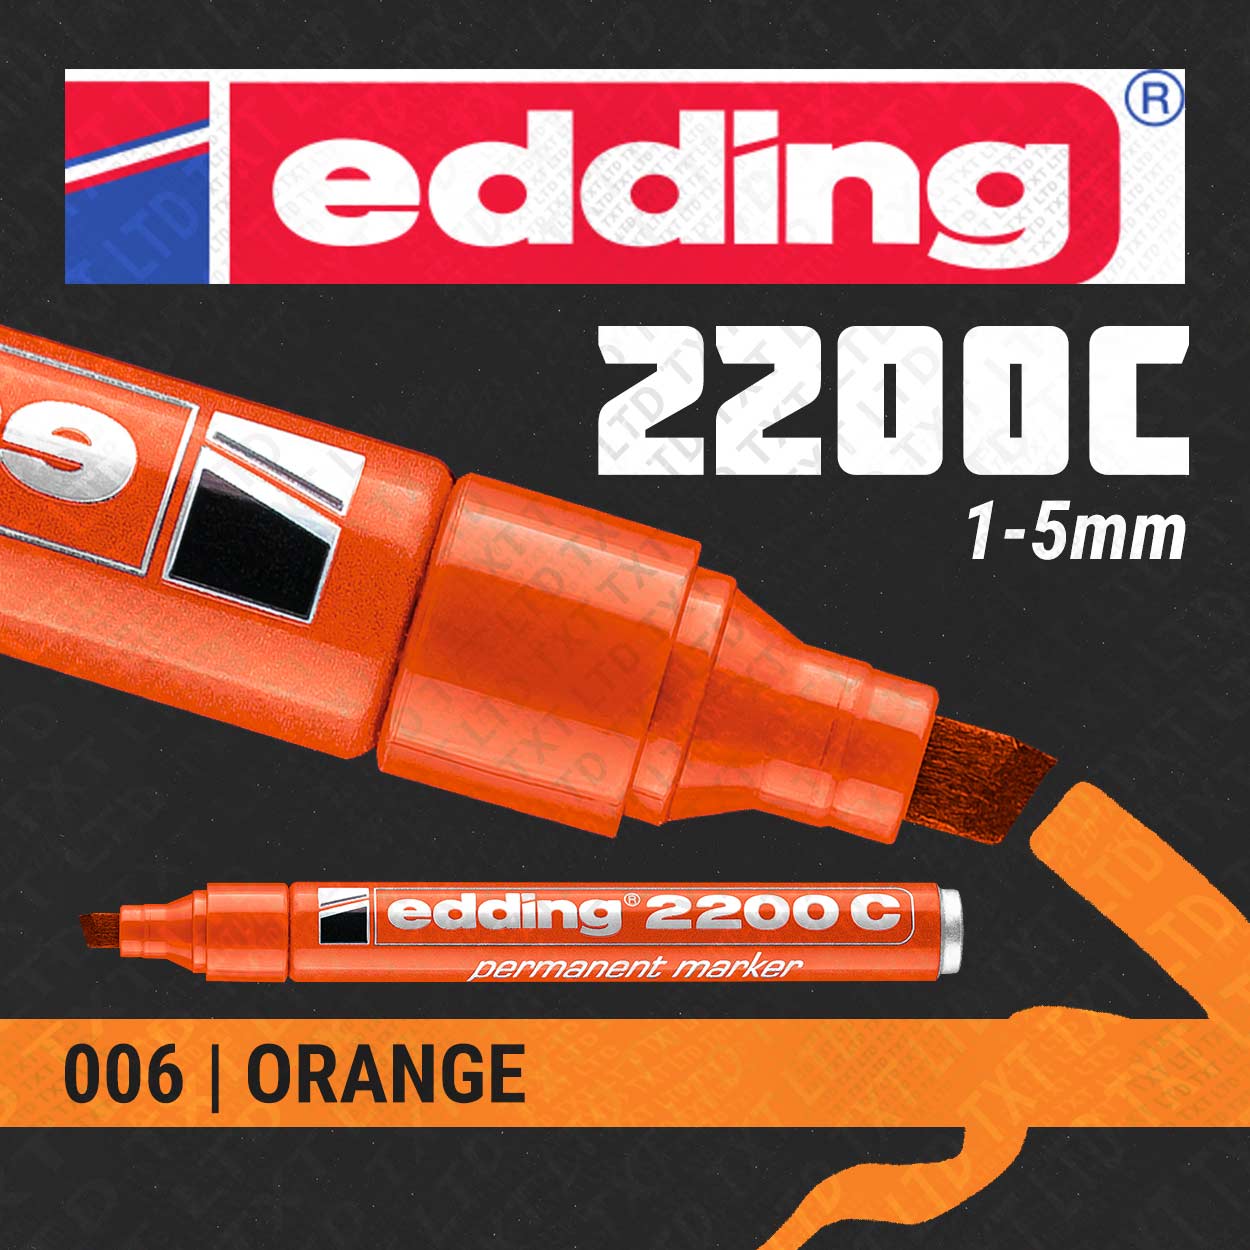 edding 2200C Marqueur indélébile – TXT LTD